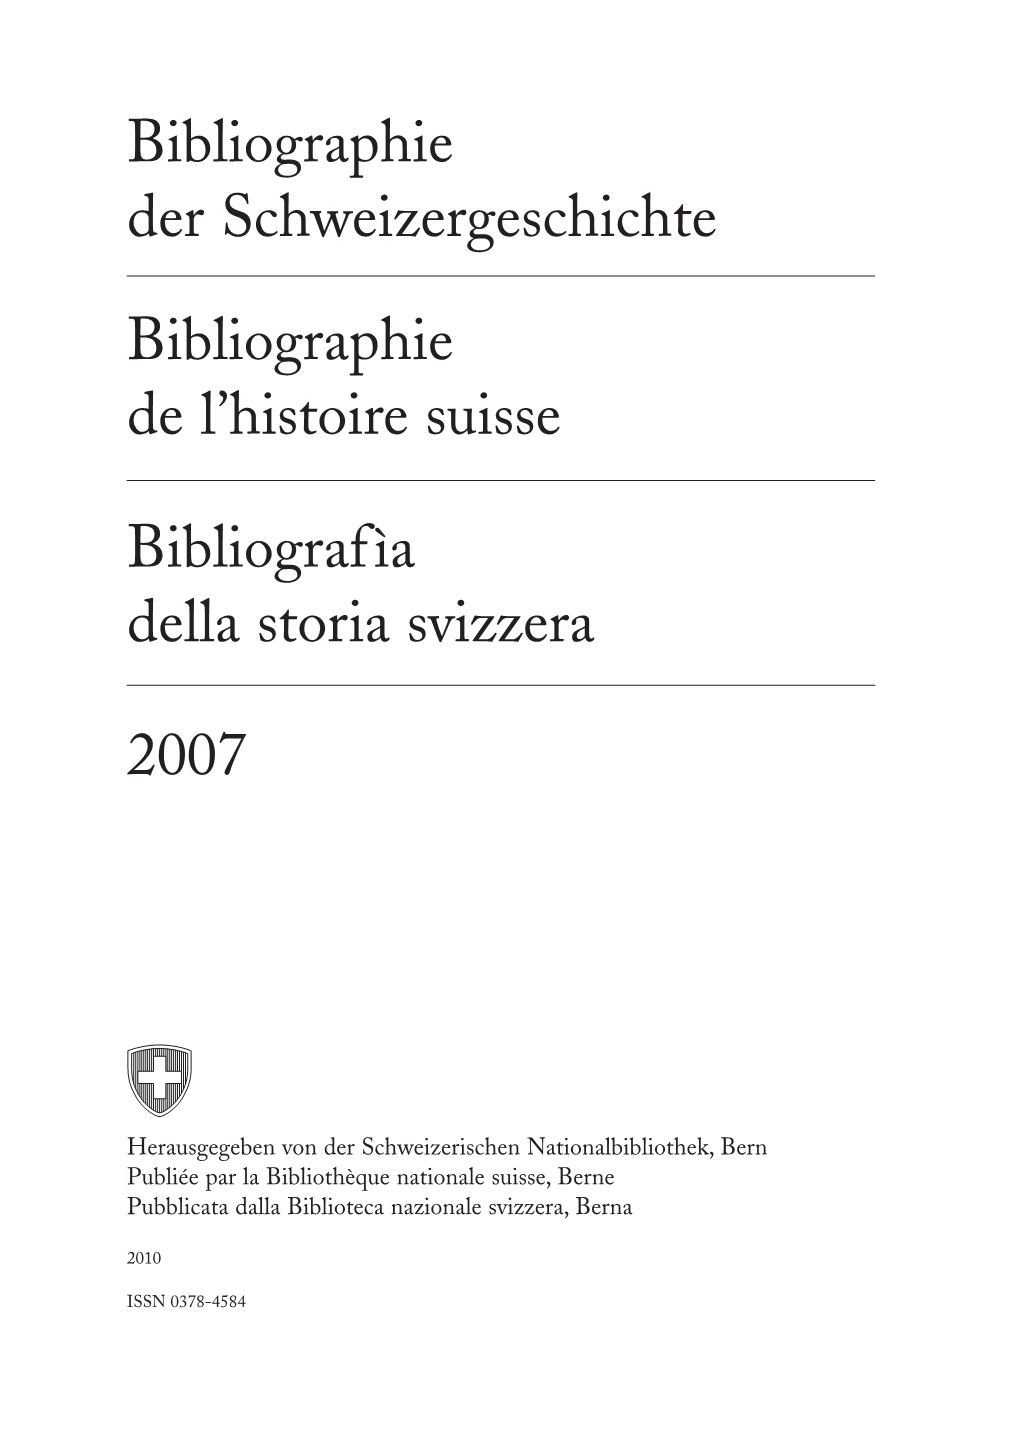 Bibliographie Der Schweizergeschichte. 2007